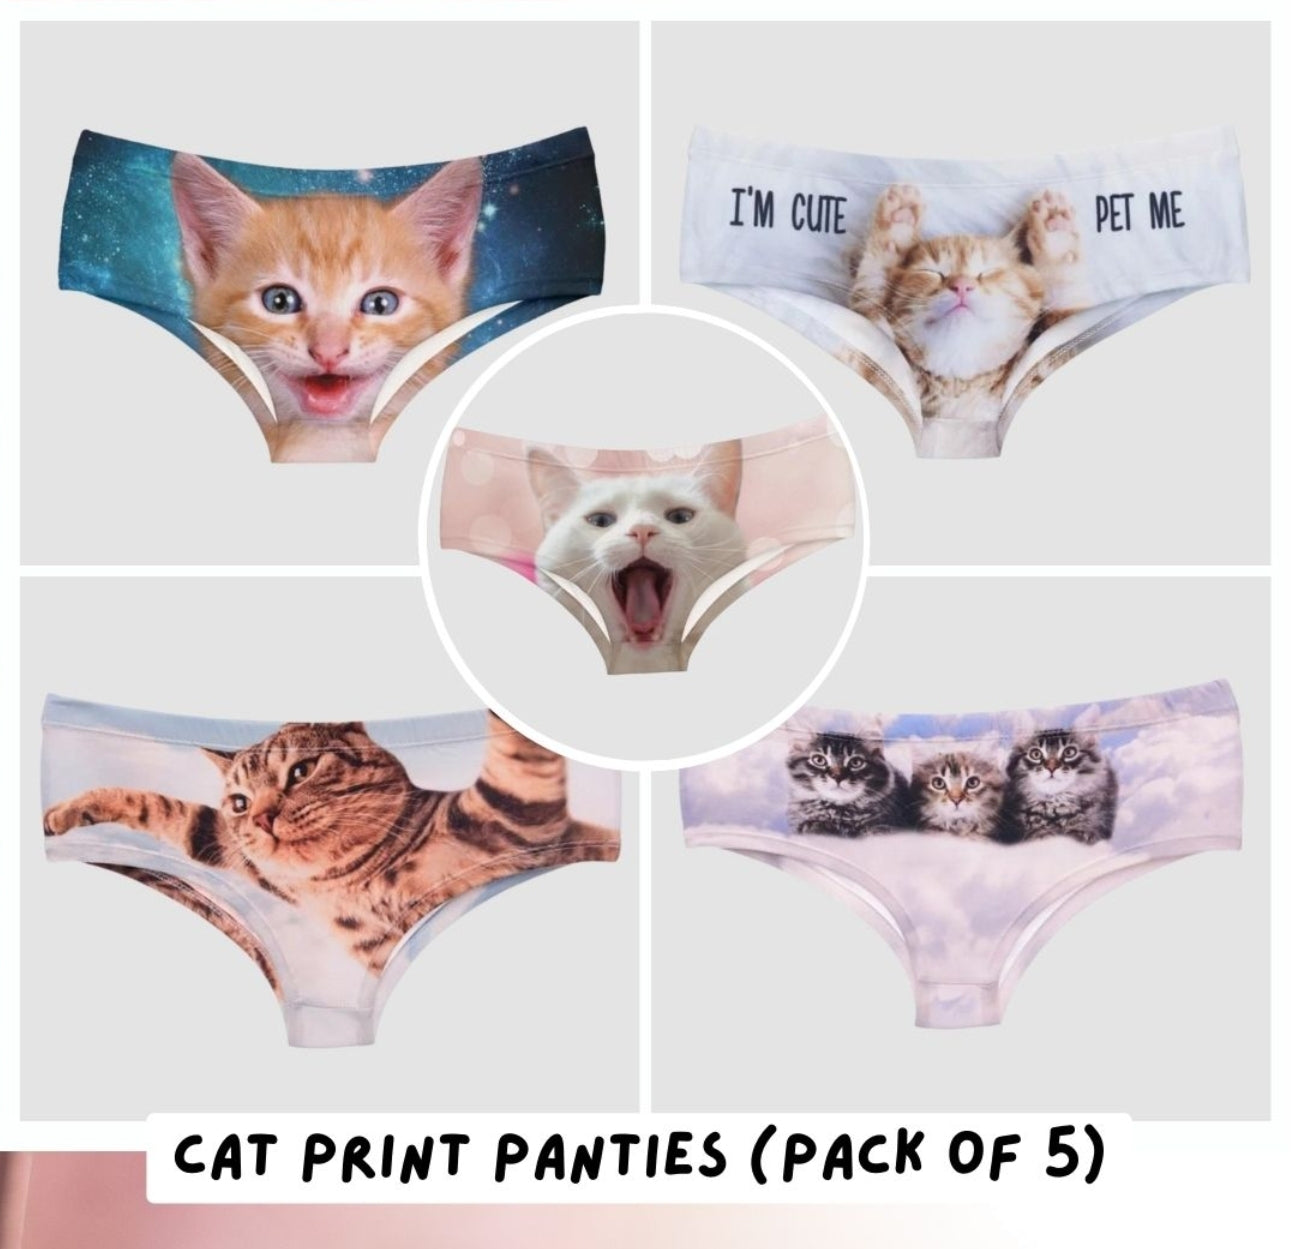 Cat Print Panties (Pack of 5)